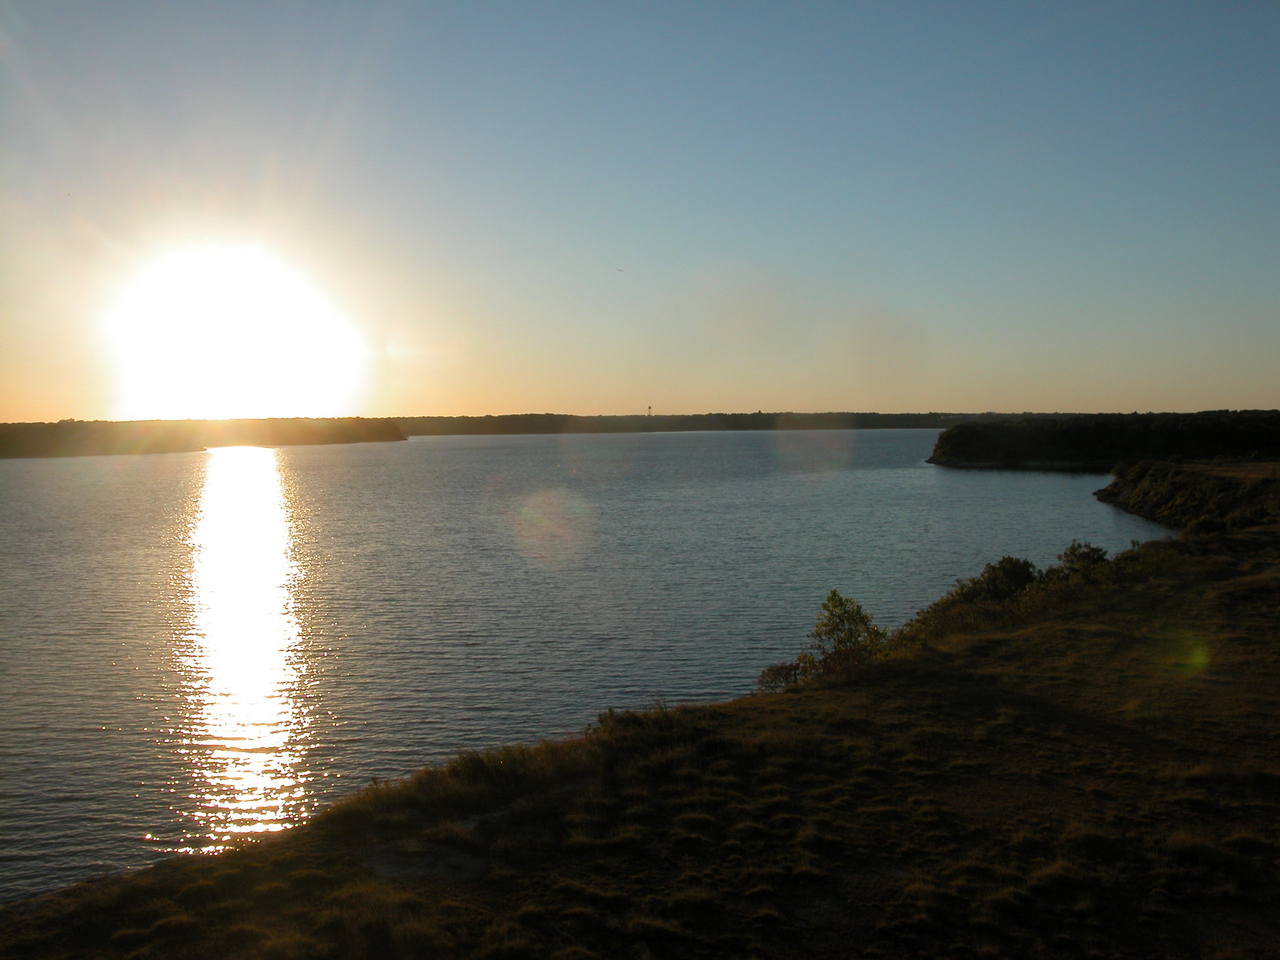 Belton, TX : Lake Belton photo, picture, image (Texas) at 0